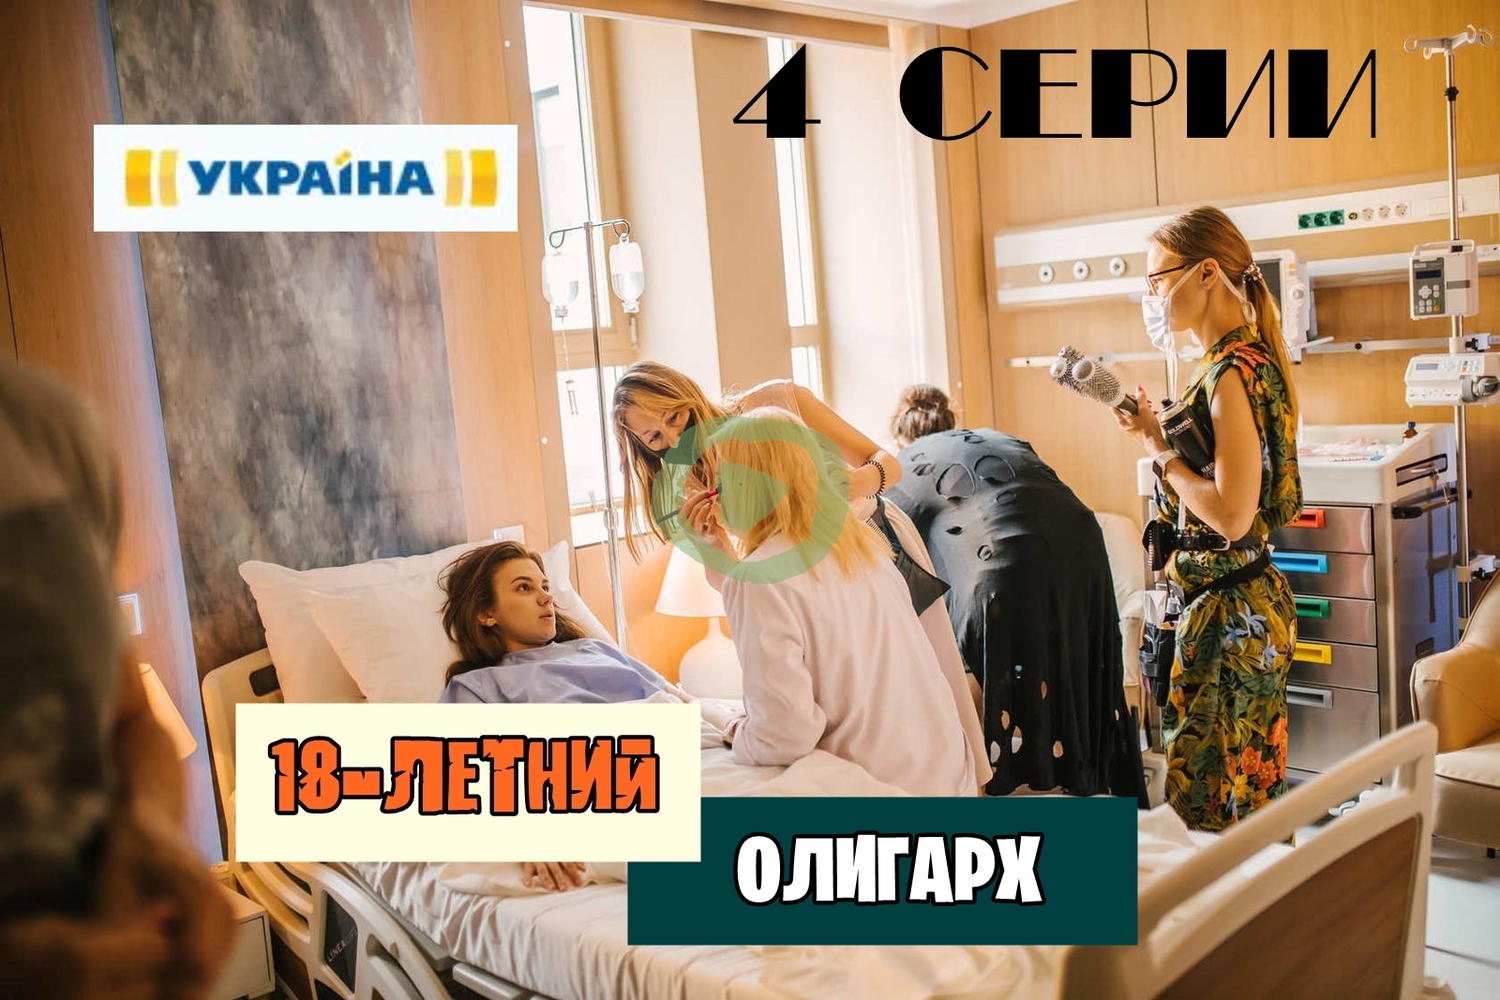 18-ЛЕТНИЙ ОЛИГАРХ 1, 2, 3, 4 СЕРИЯ большой постер сериала